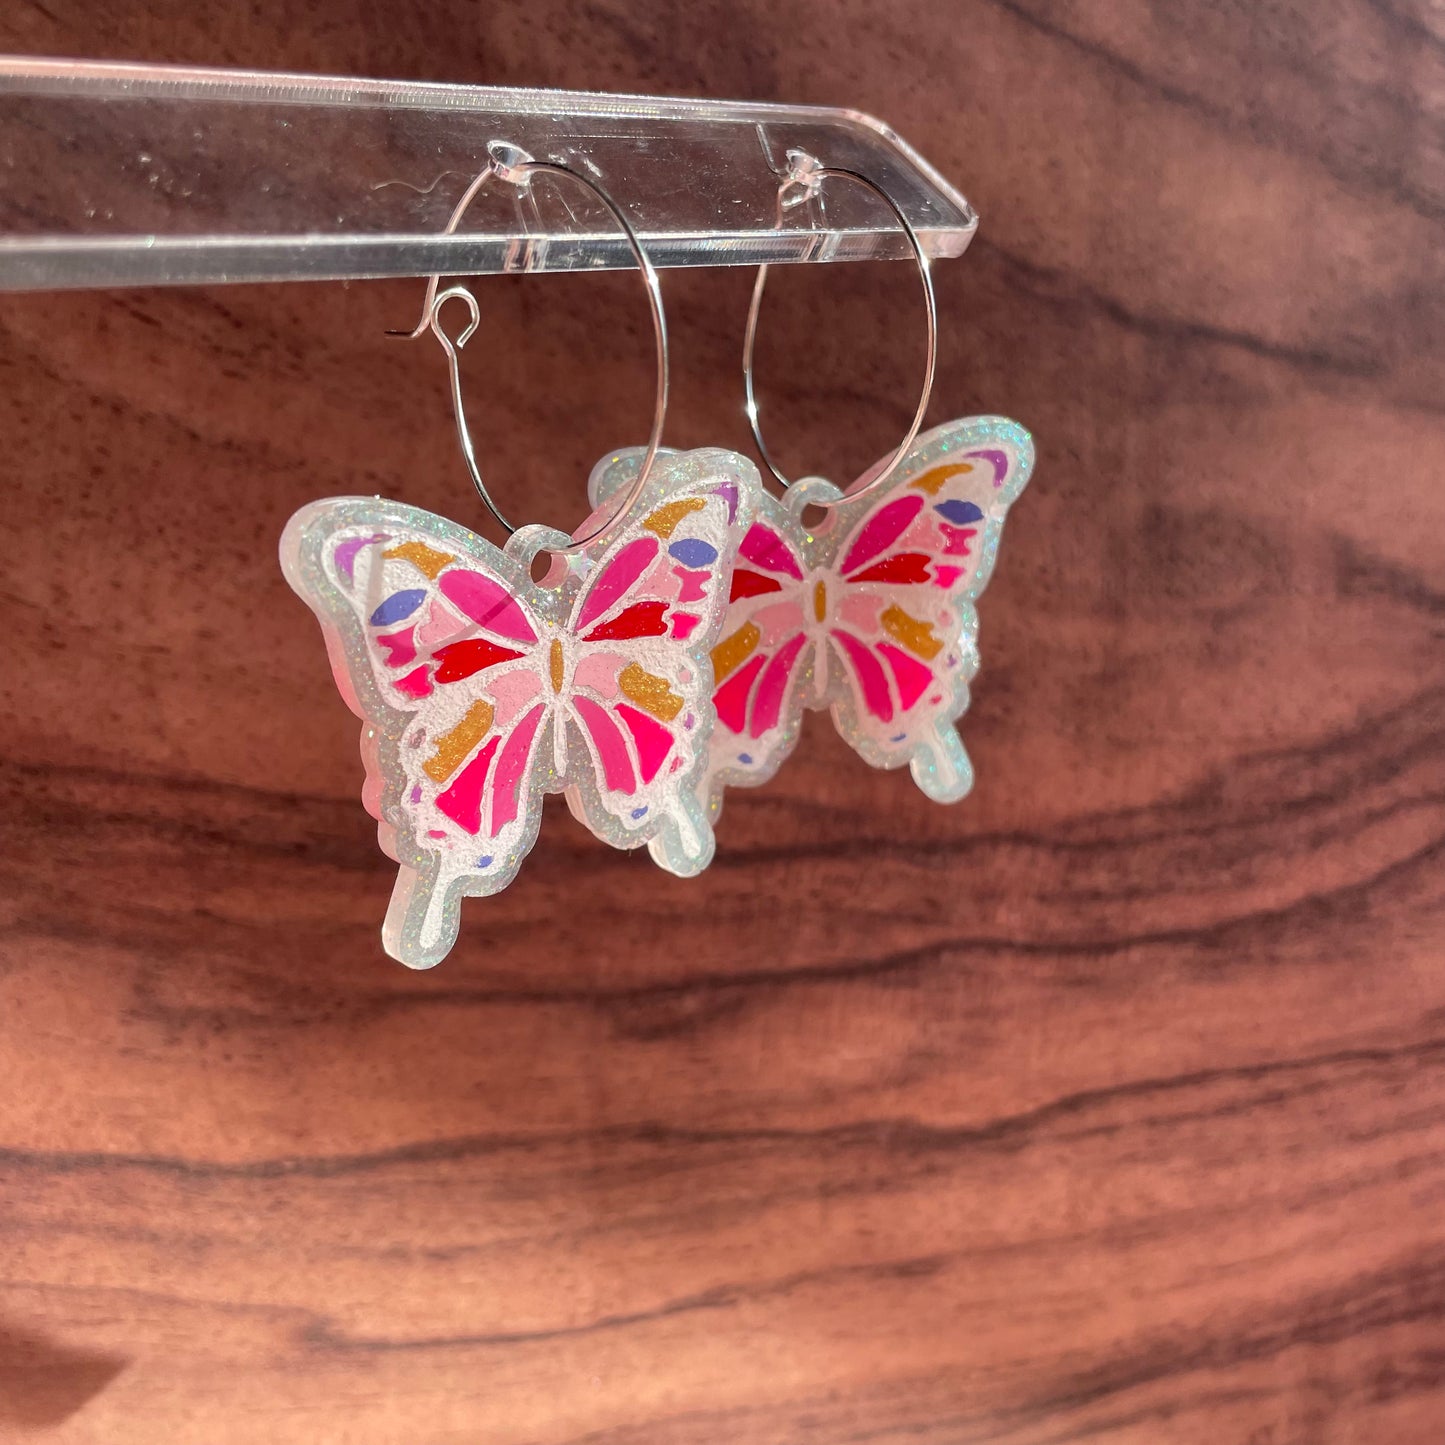 Resin Glittery Butterfly Earrings